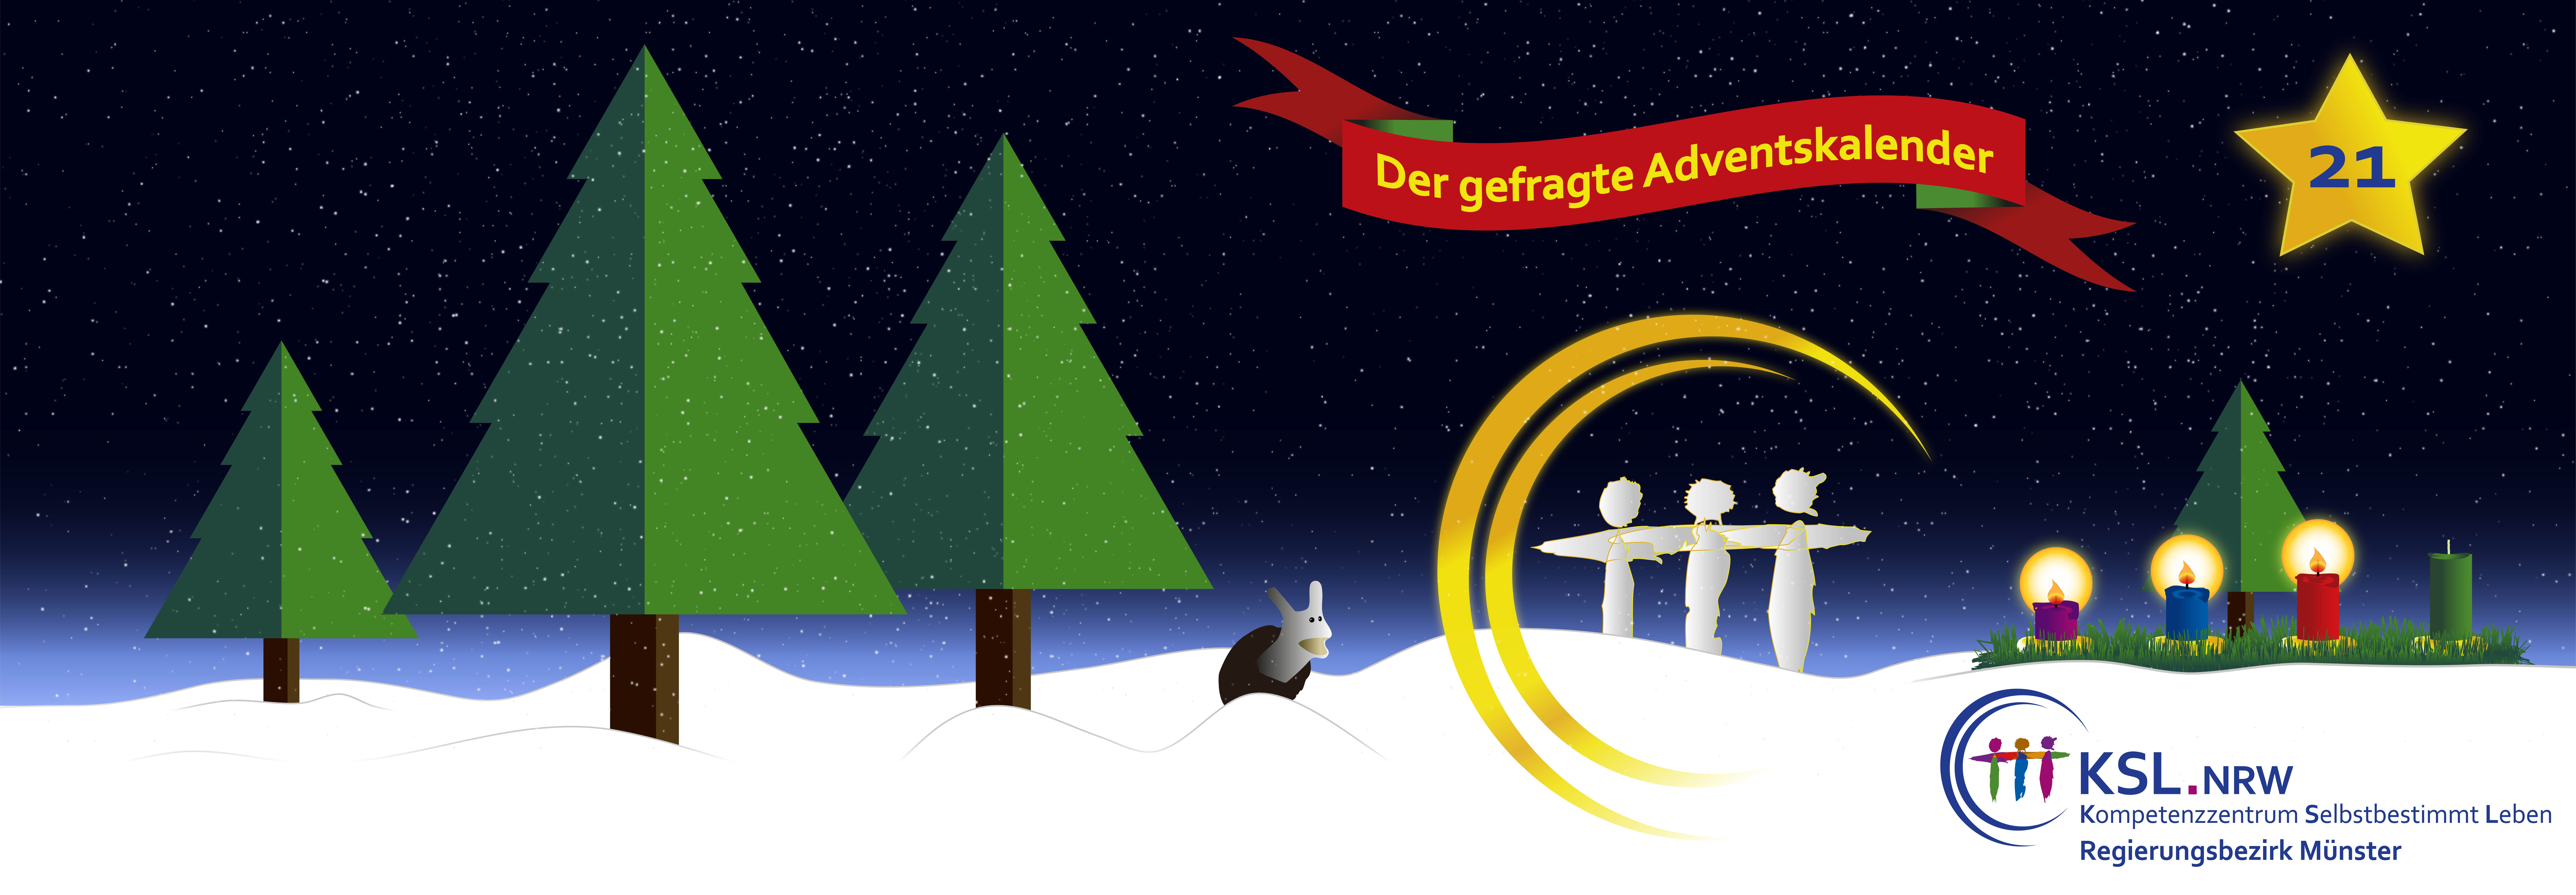 Der gefragte Adventskalender - KSL Münster - weihnachtlicher Hintergrund - vier Tannenbäume - ein Stern mit der Nummer 21 - ein Adventskranz mit vier Kerzen